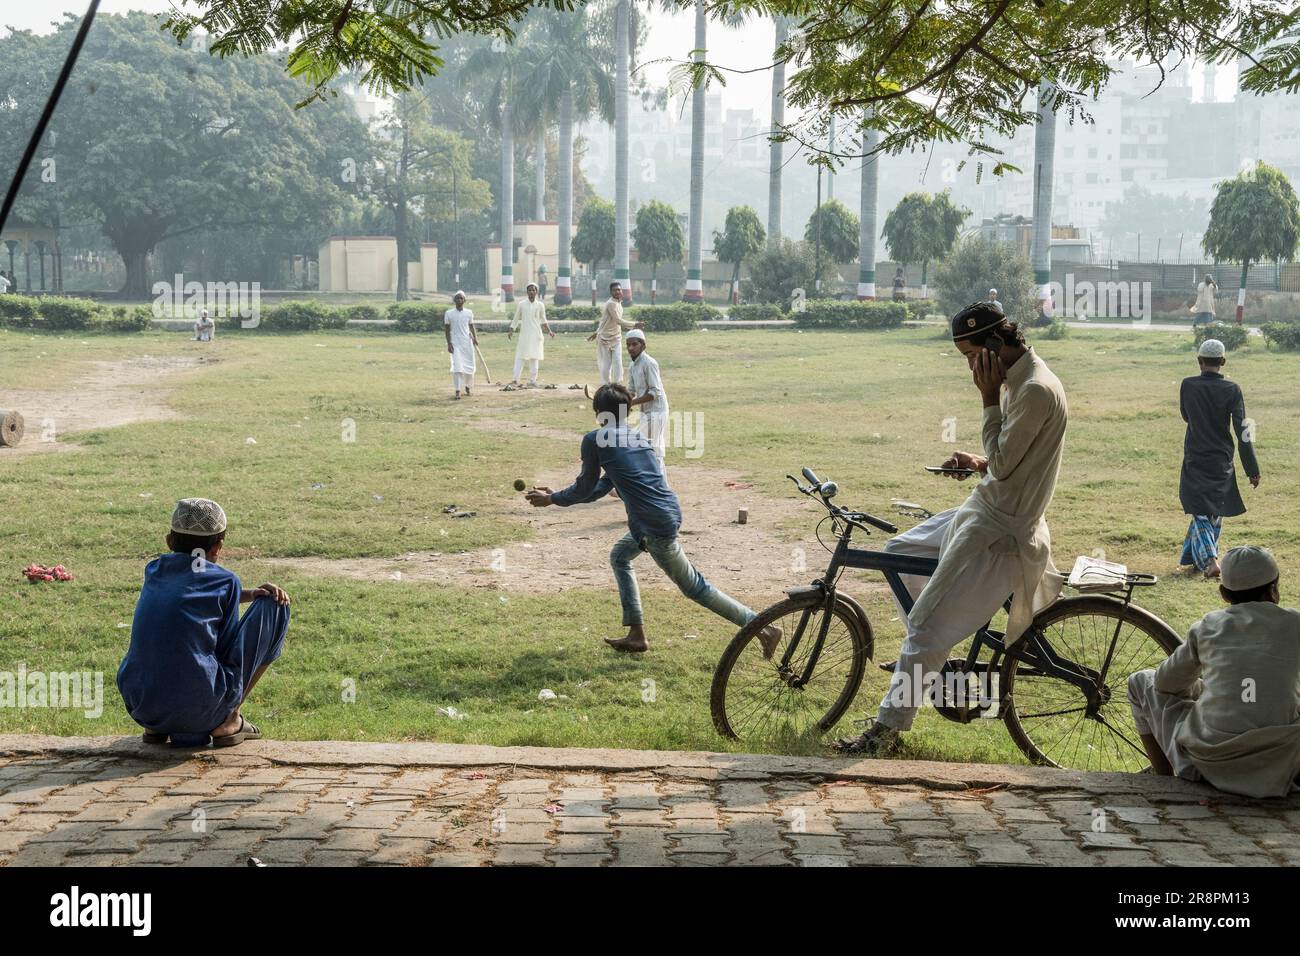 Boys play and watch cricket in Beniya Park, Varanasi, India Stock Photo